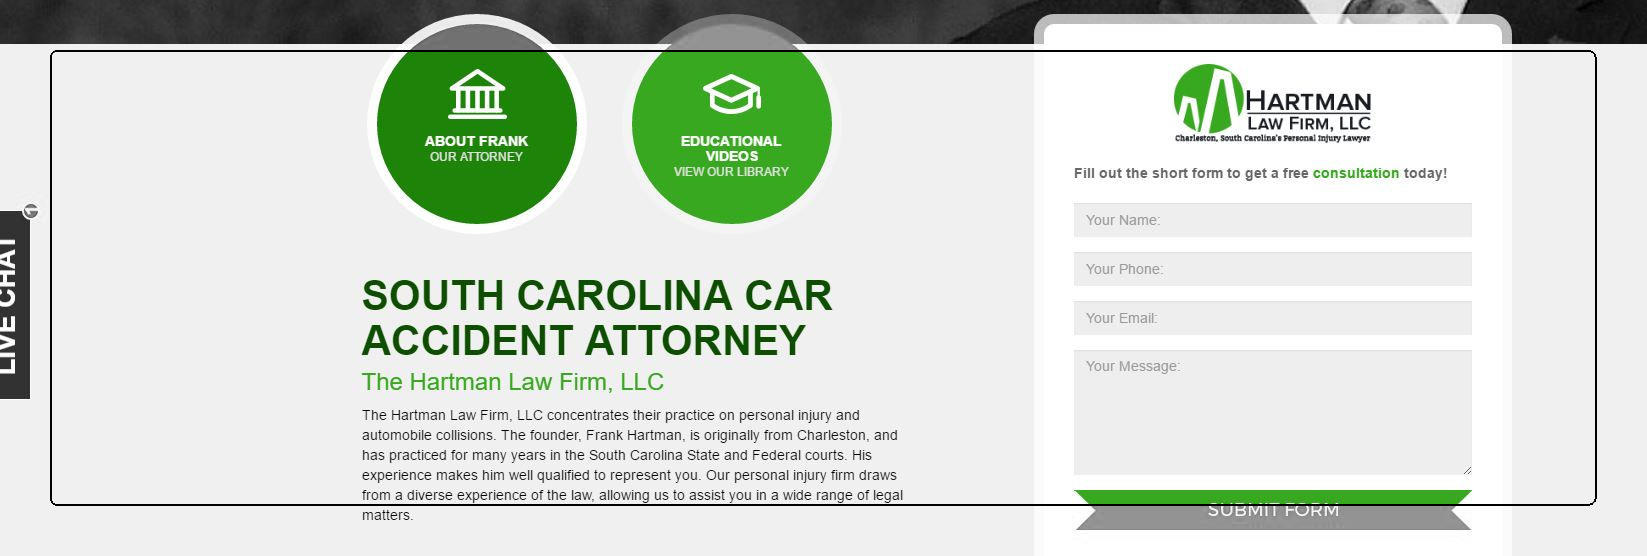 South Carolina Car Accident Attorney